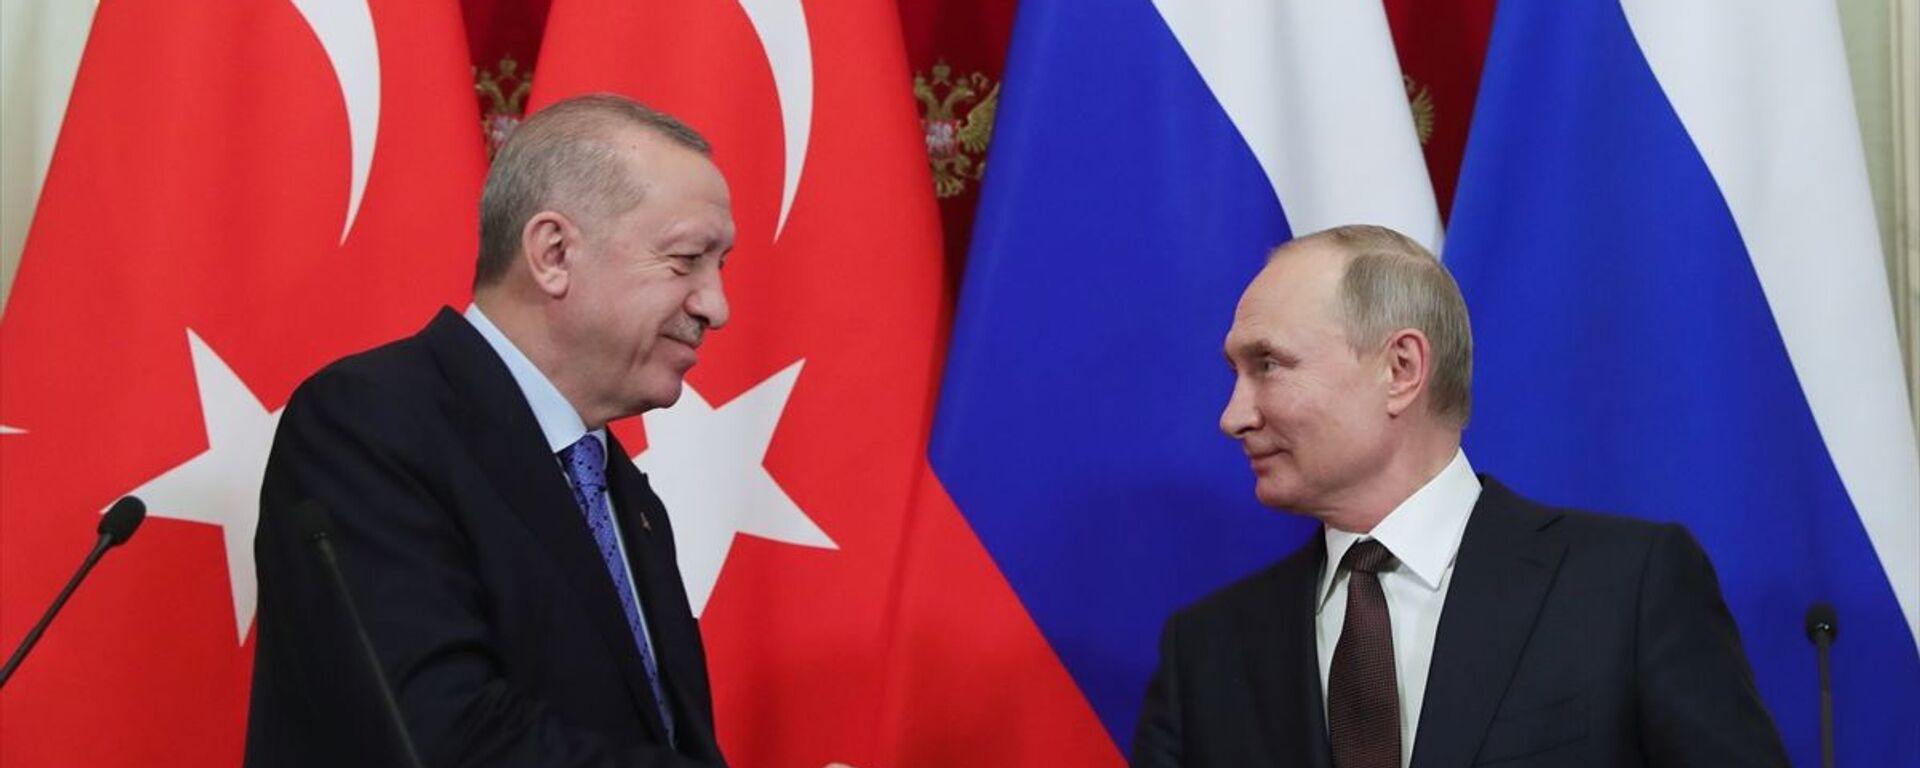 Türkiye Cumhurbaşkanı Recep Tayyip Erdoğan ile Rusya Devlet Başkanı Vladimir Putin - Sputnik Türkiye, 1920, 28.09.2021